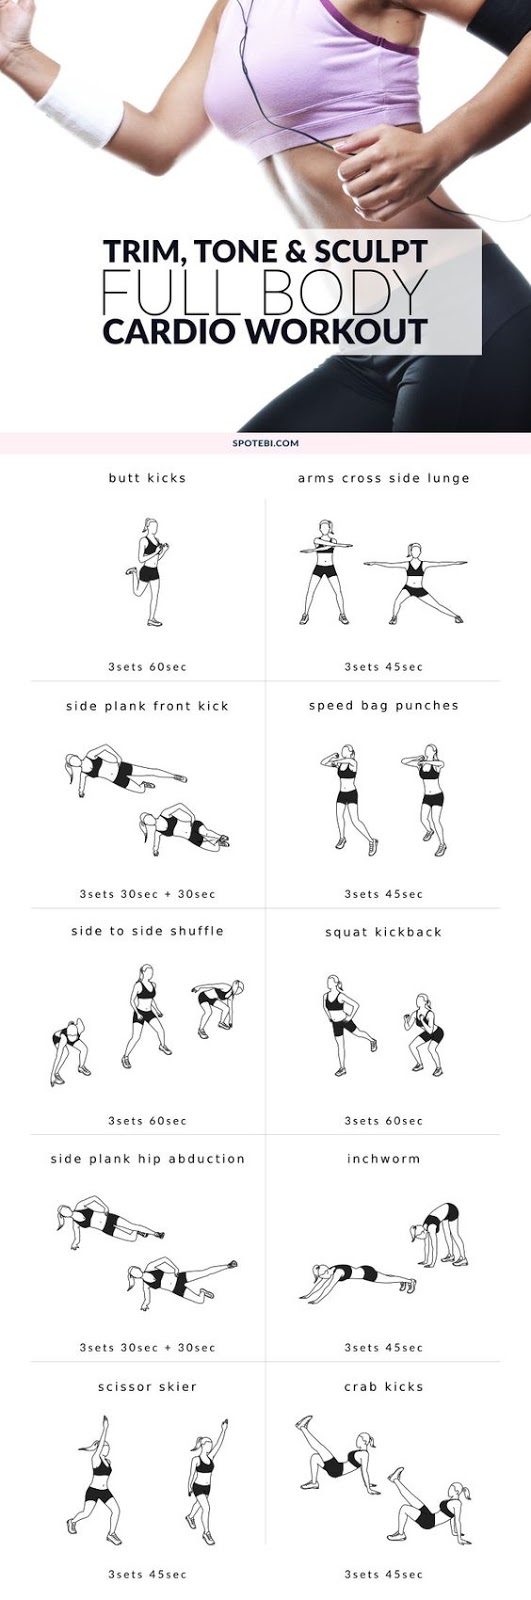 Health: Full-Body & Split Workouts Routine For Beginner